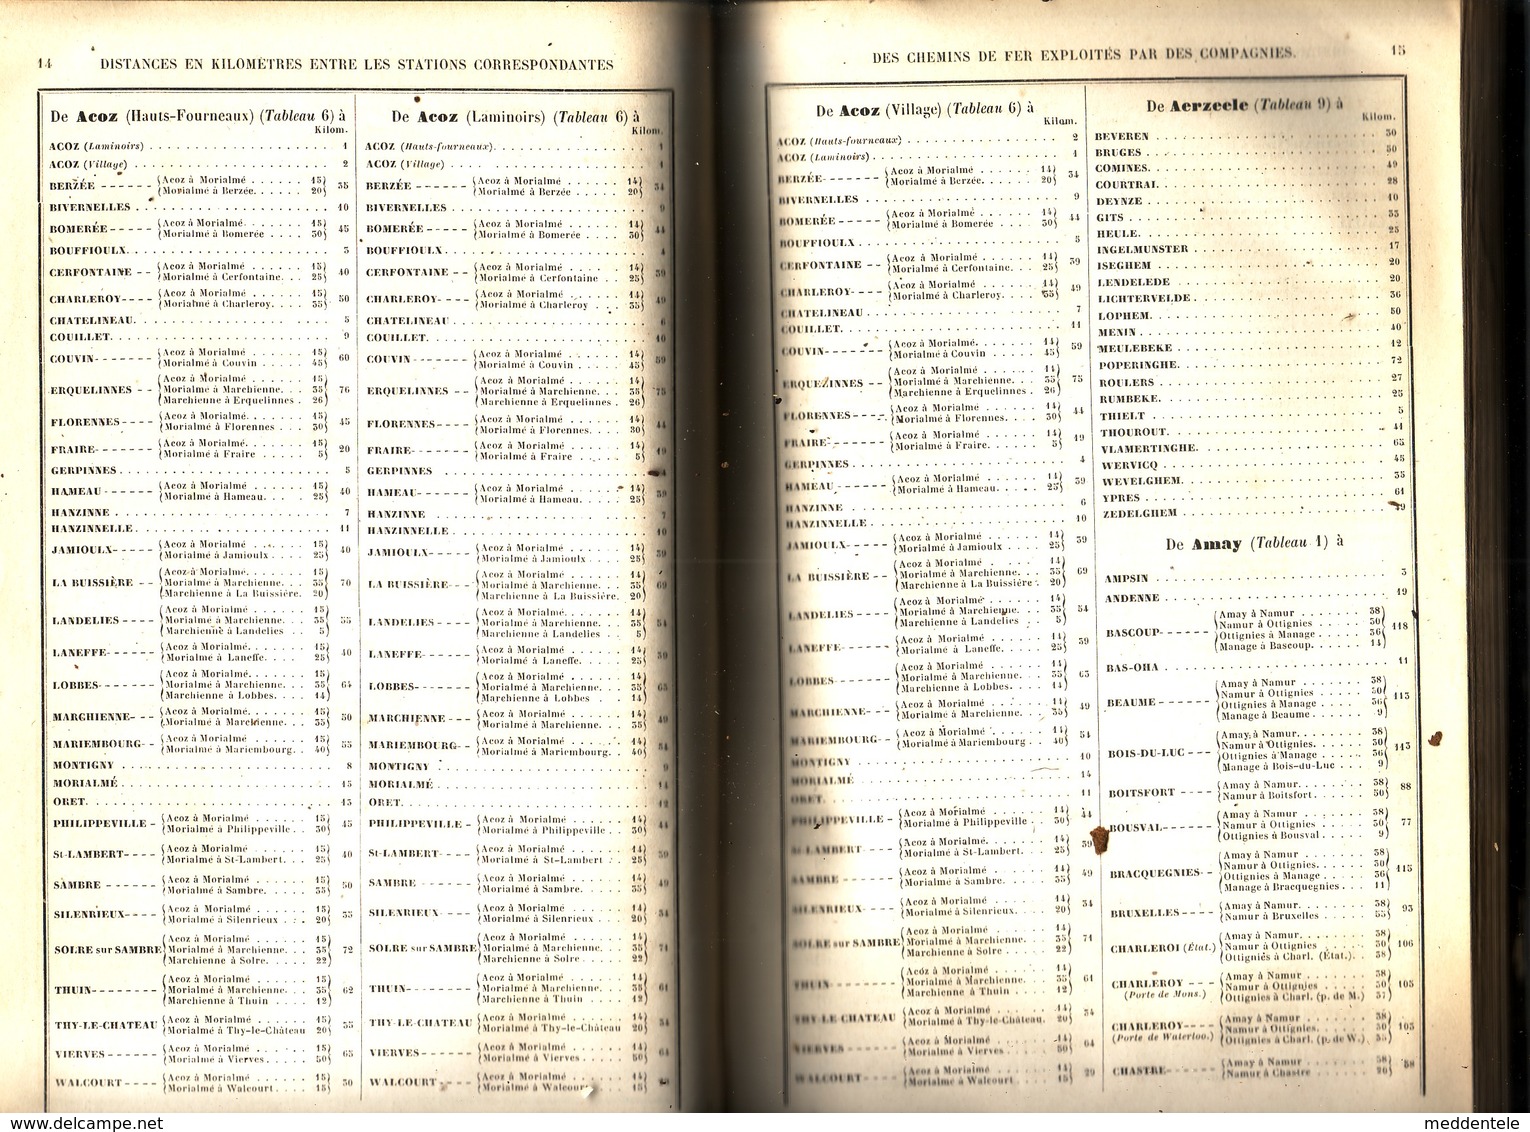 Livre de 1856 liste des communes et gares de Belgique avec relations chemin de fer + télégraphe